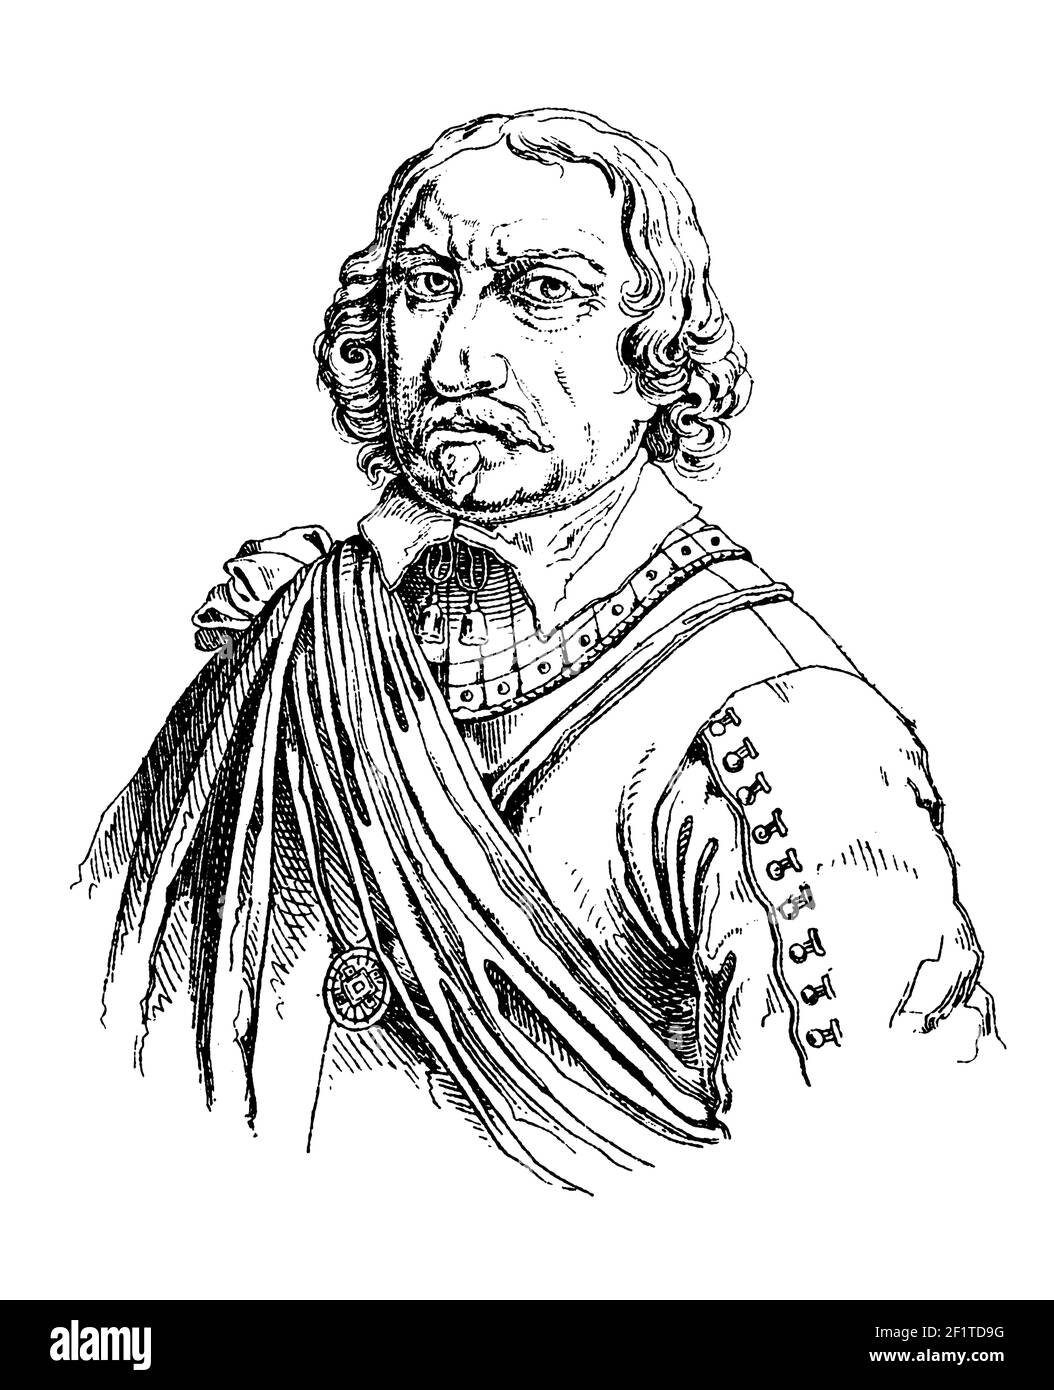 Antike Illustration eines Porträts von Oliver Cromwell, englischem Militär- und politischen Führer. Cromwell wurde am 25. April 1599 [OS] in Huntington geboren, Stockfoto